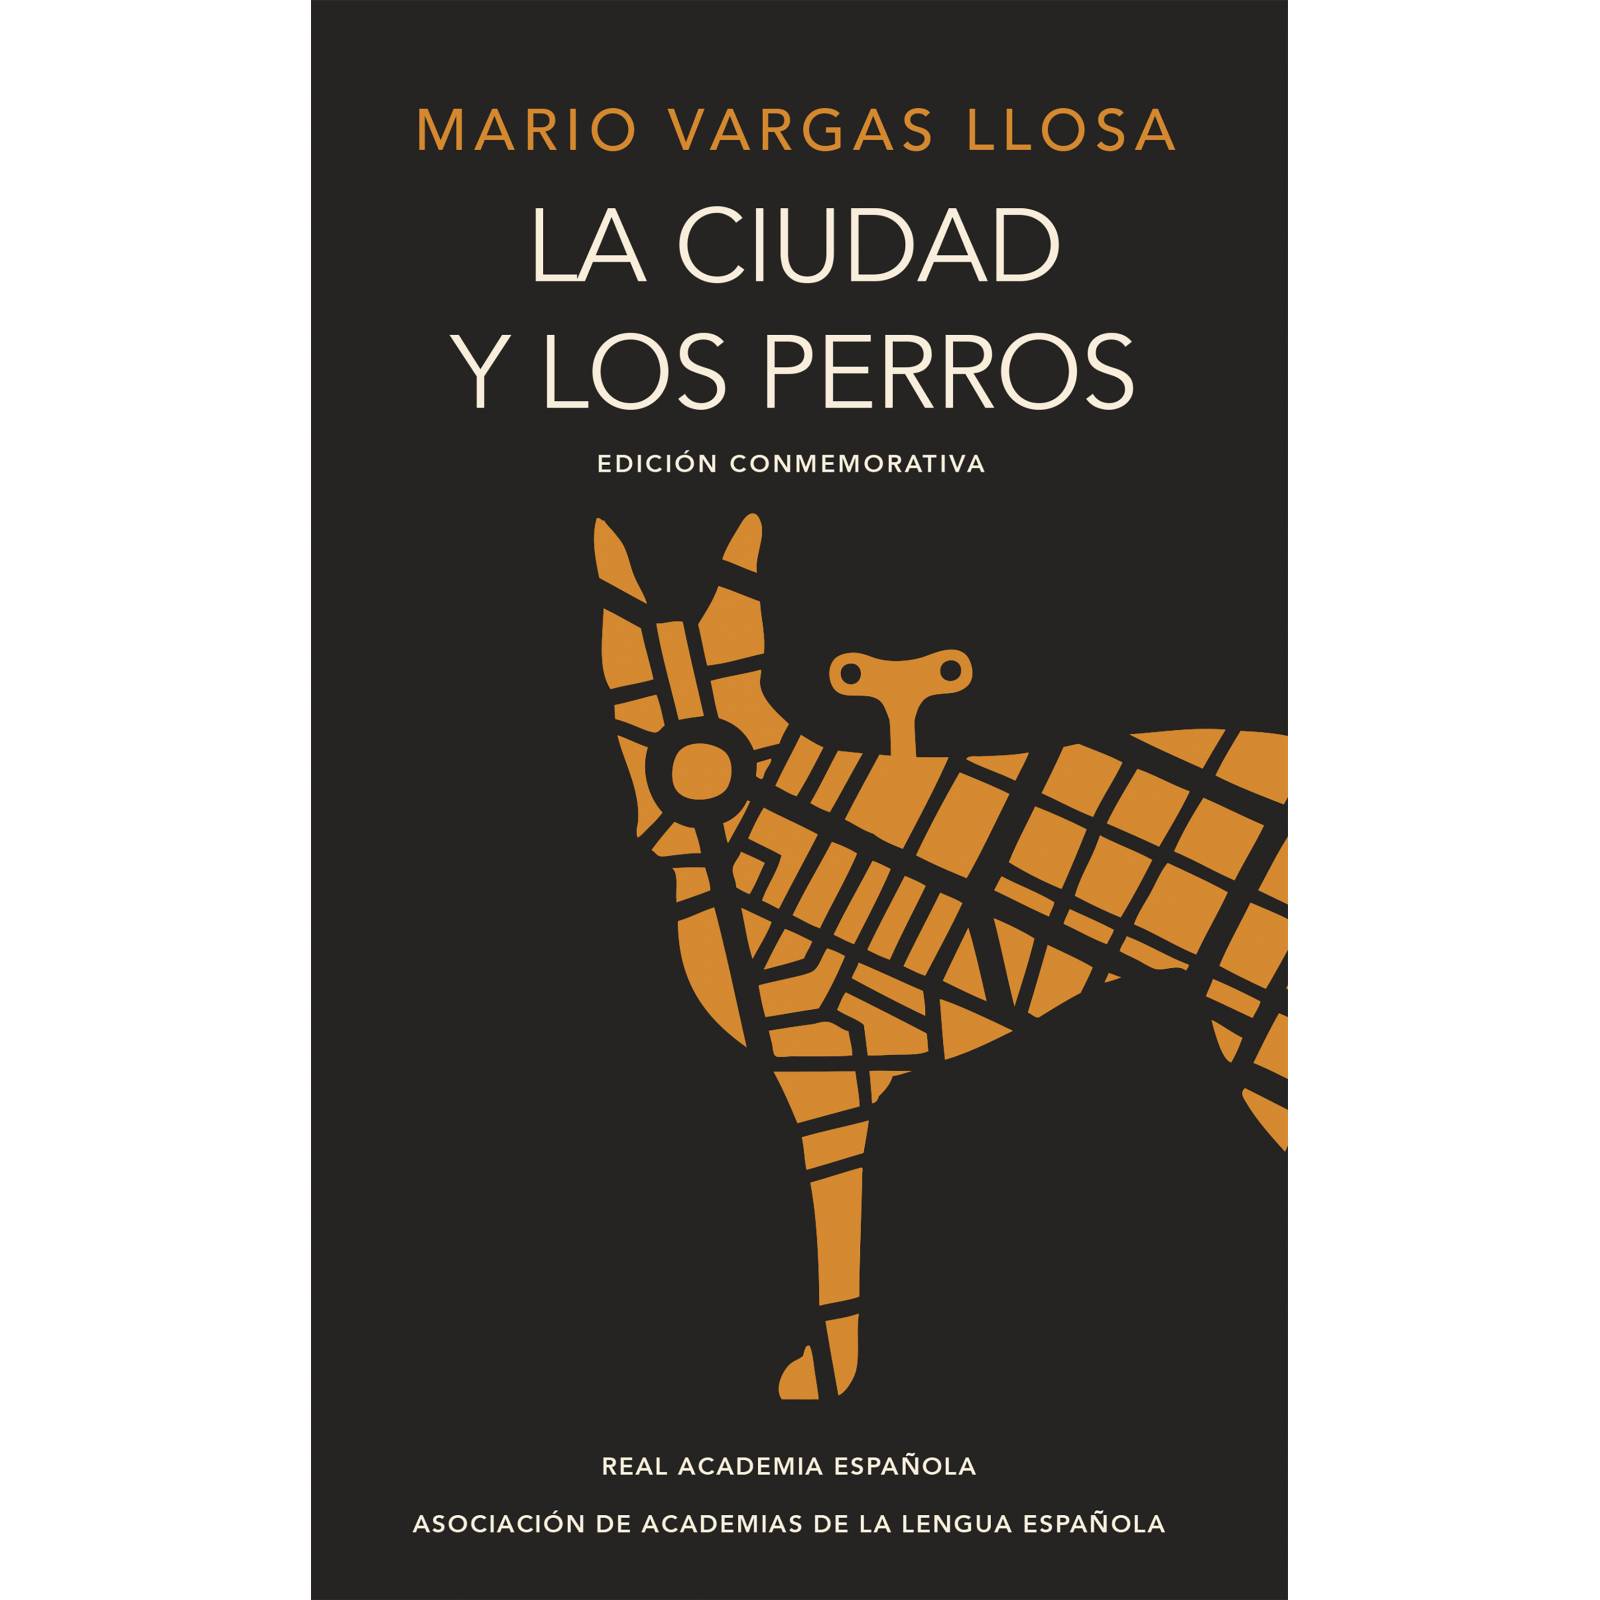 La ciudad y los perrosAutorMario Vargas Llosa